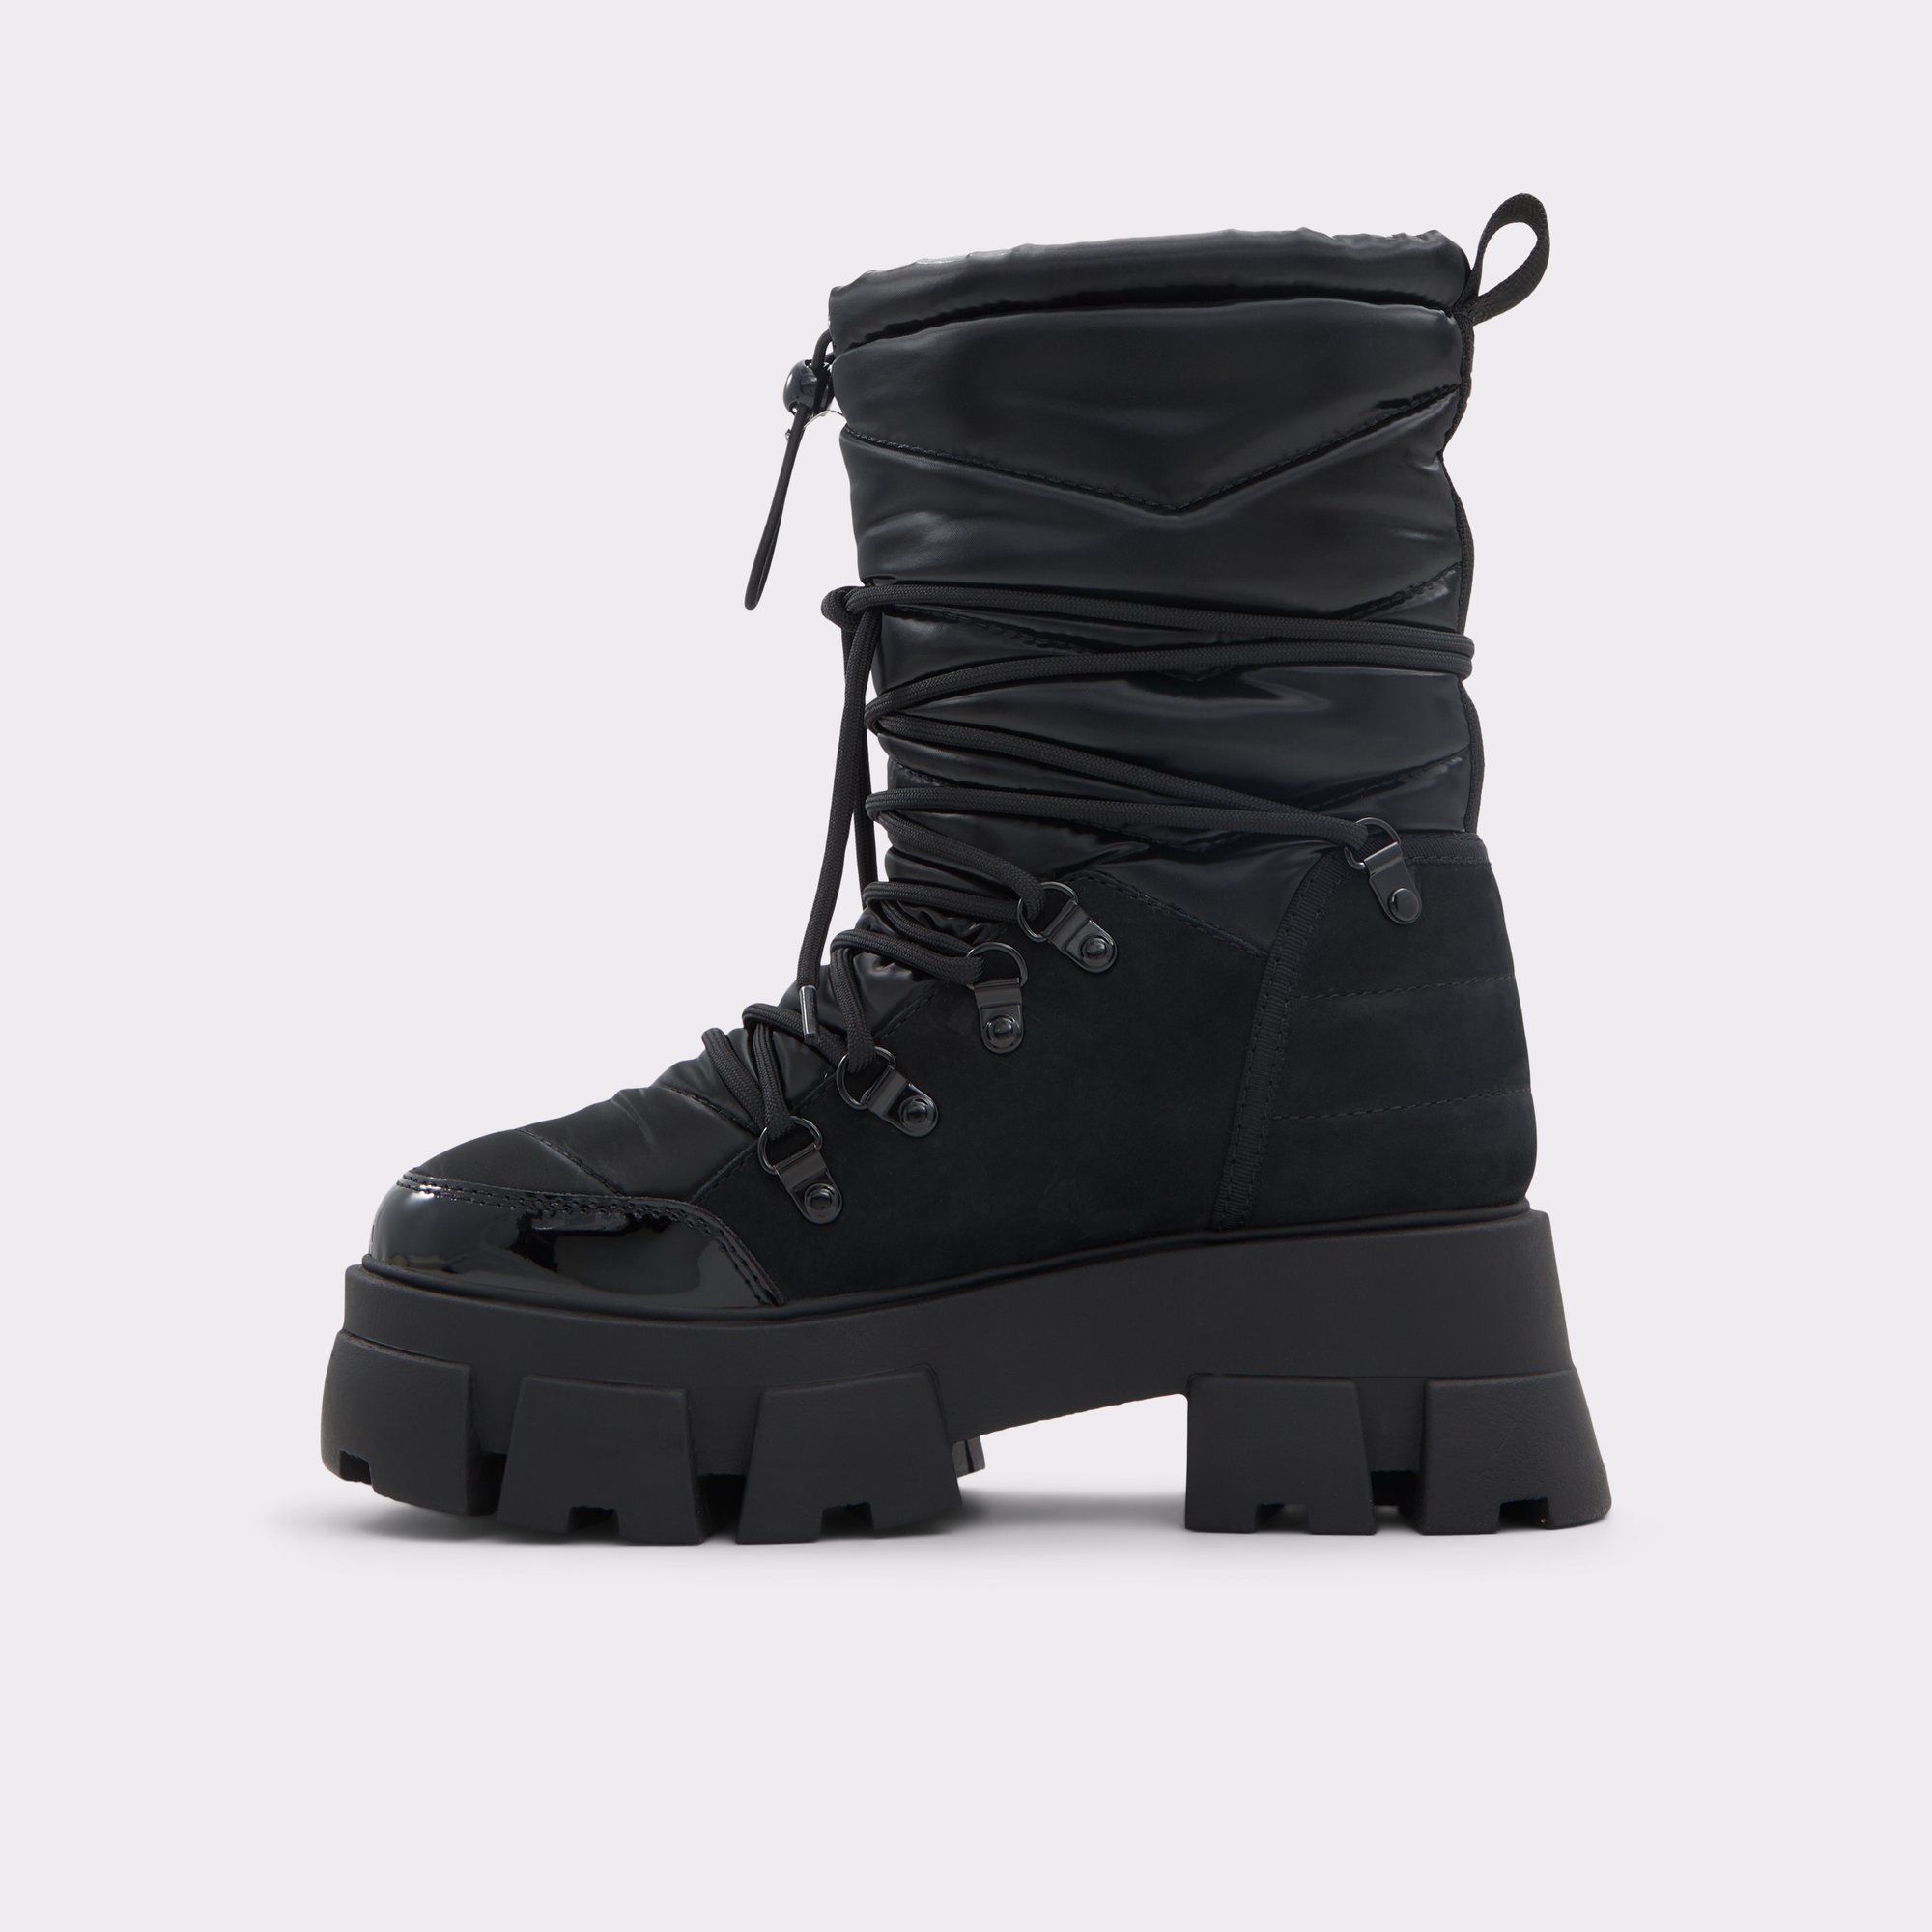 Nordica Black Women's Winter boots | ALDO Canada